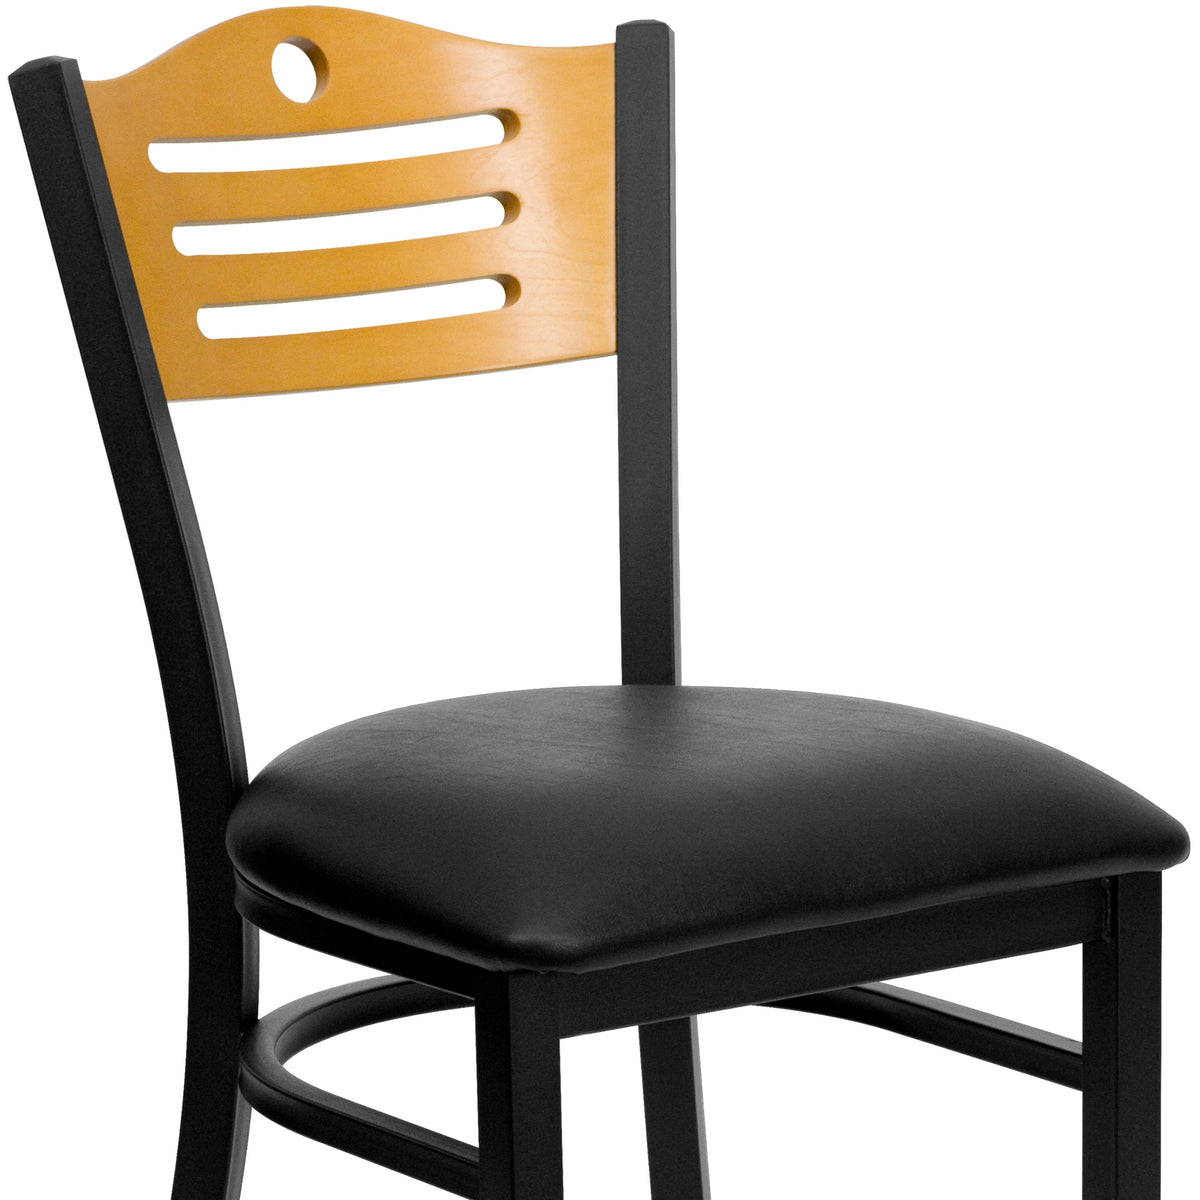 Natural Wood Back/Black Vinyl Seat/Black Metal Frame |#| Black Slat Back Metal Restaurant Chair - Natural Wood Back, Black Vinyl Seat